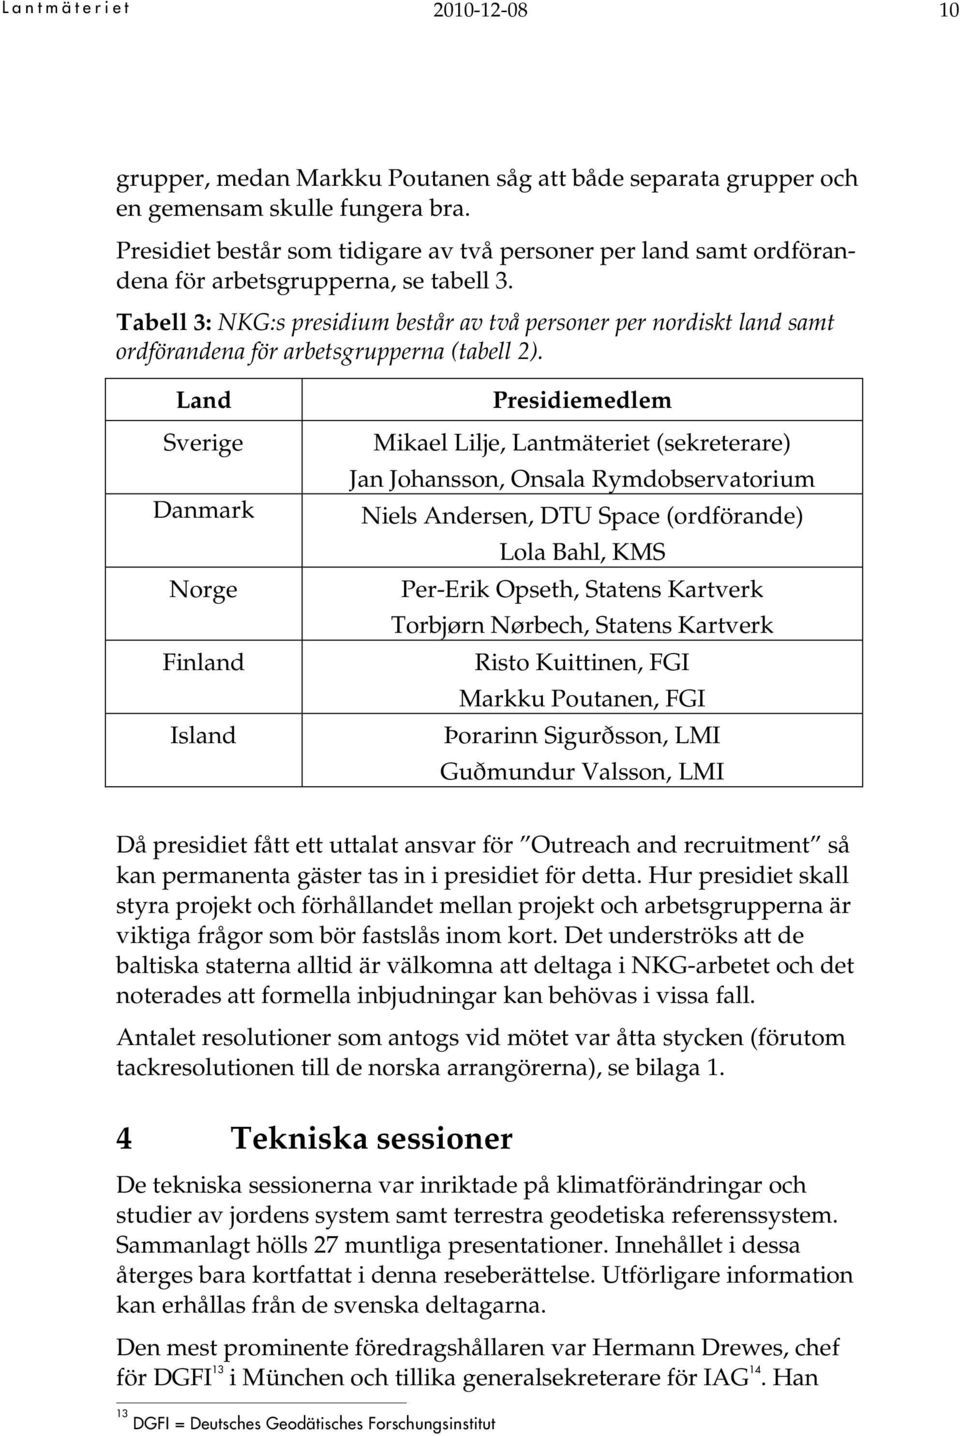 Tabell 3: NKG:s presidium består av två personer per nordiskt land samt ordförandena för arbetsgrupperna (tabell 2).